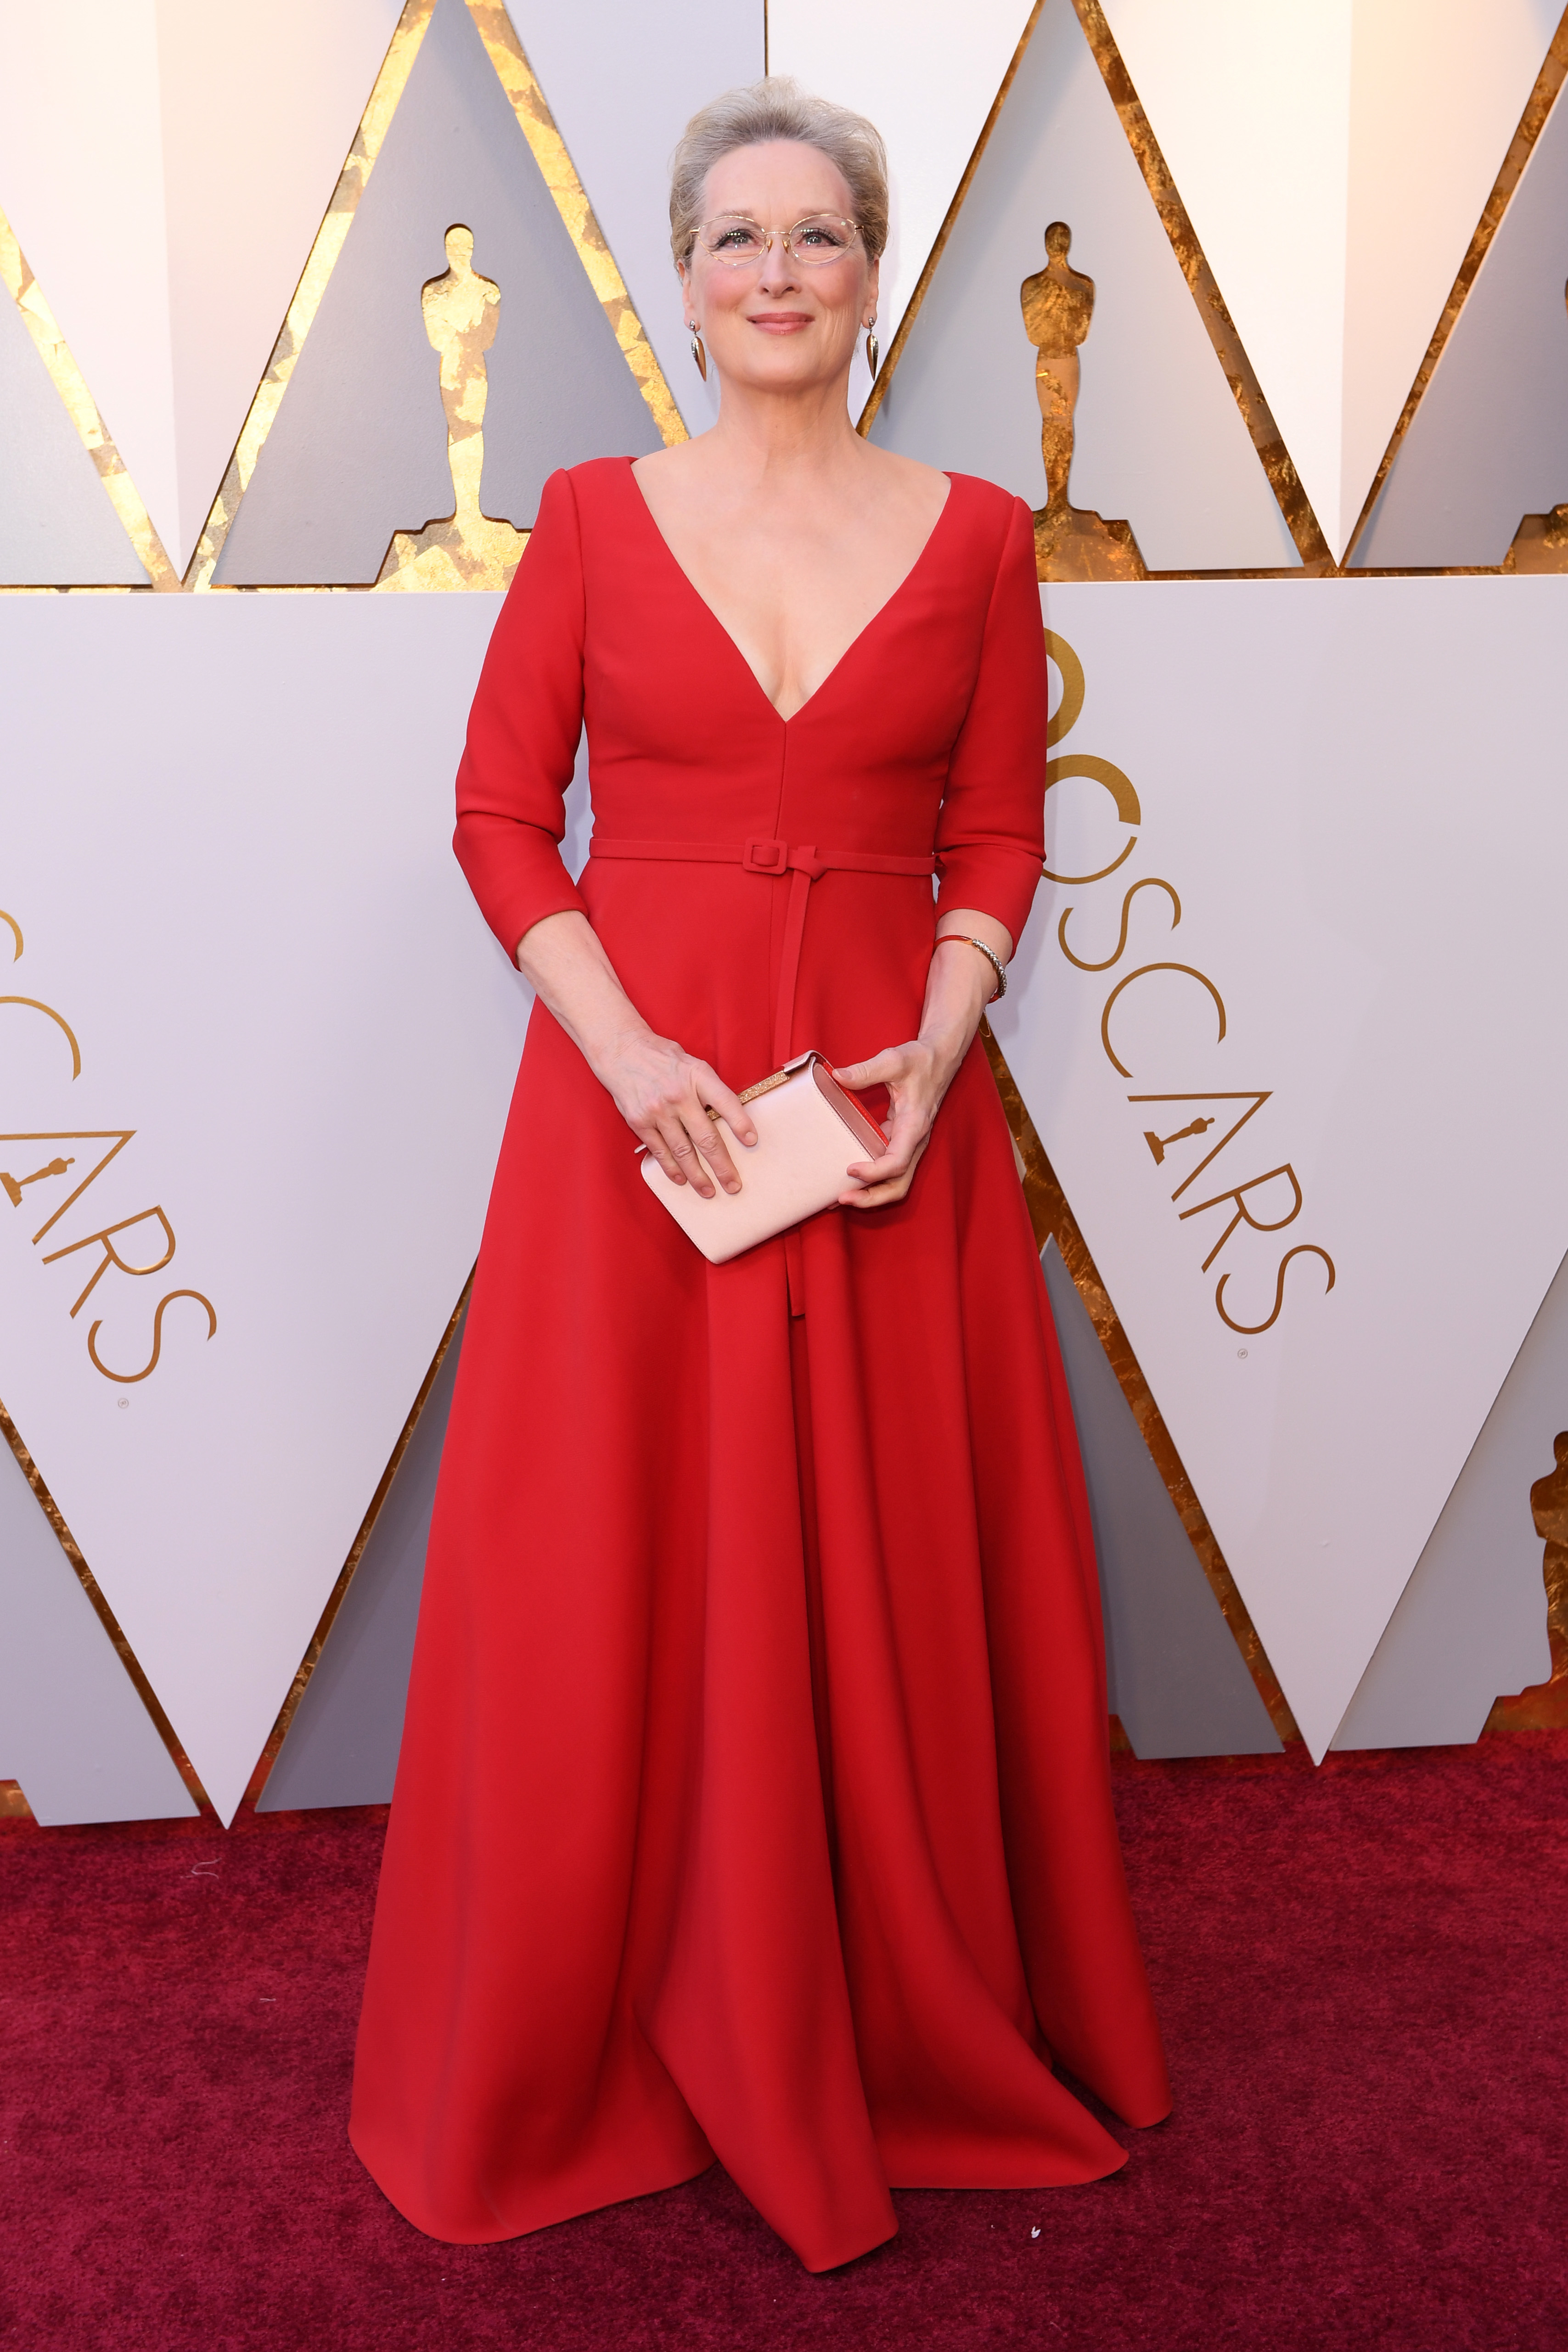 Meryl Streep - All her Oscar looks 